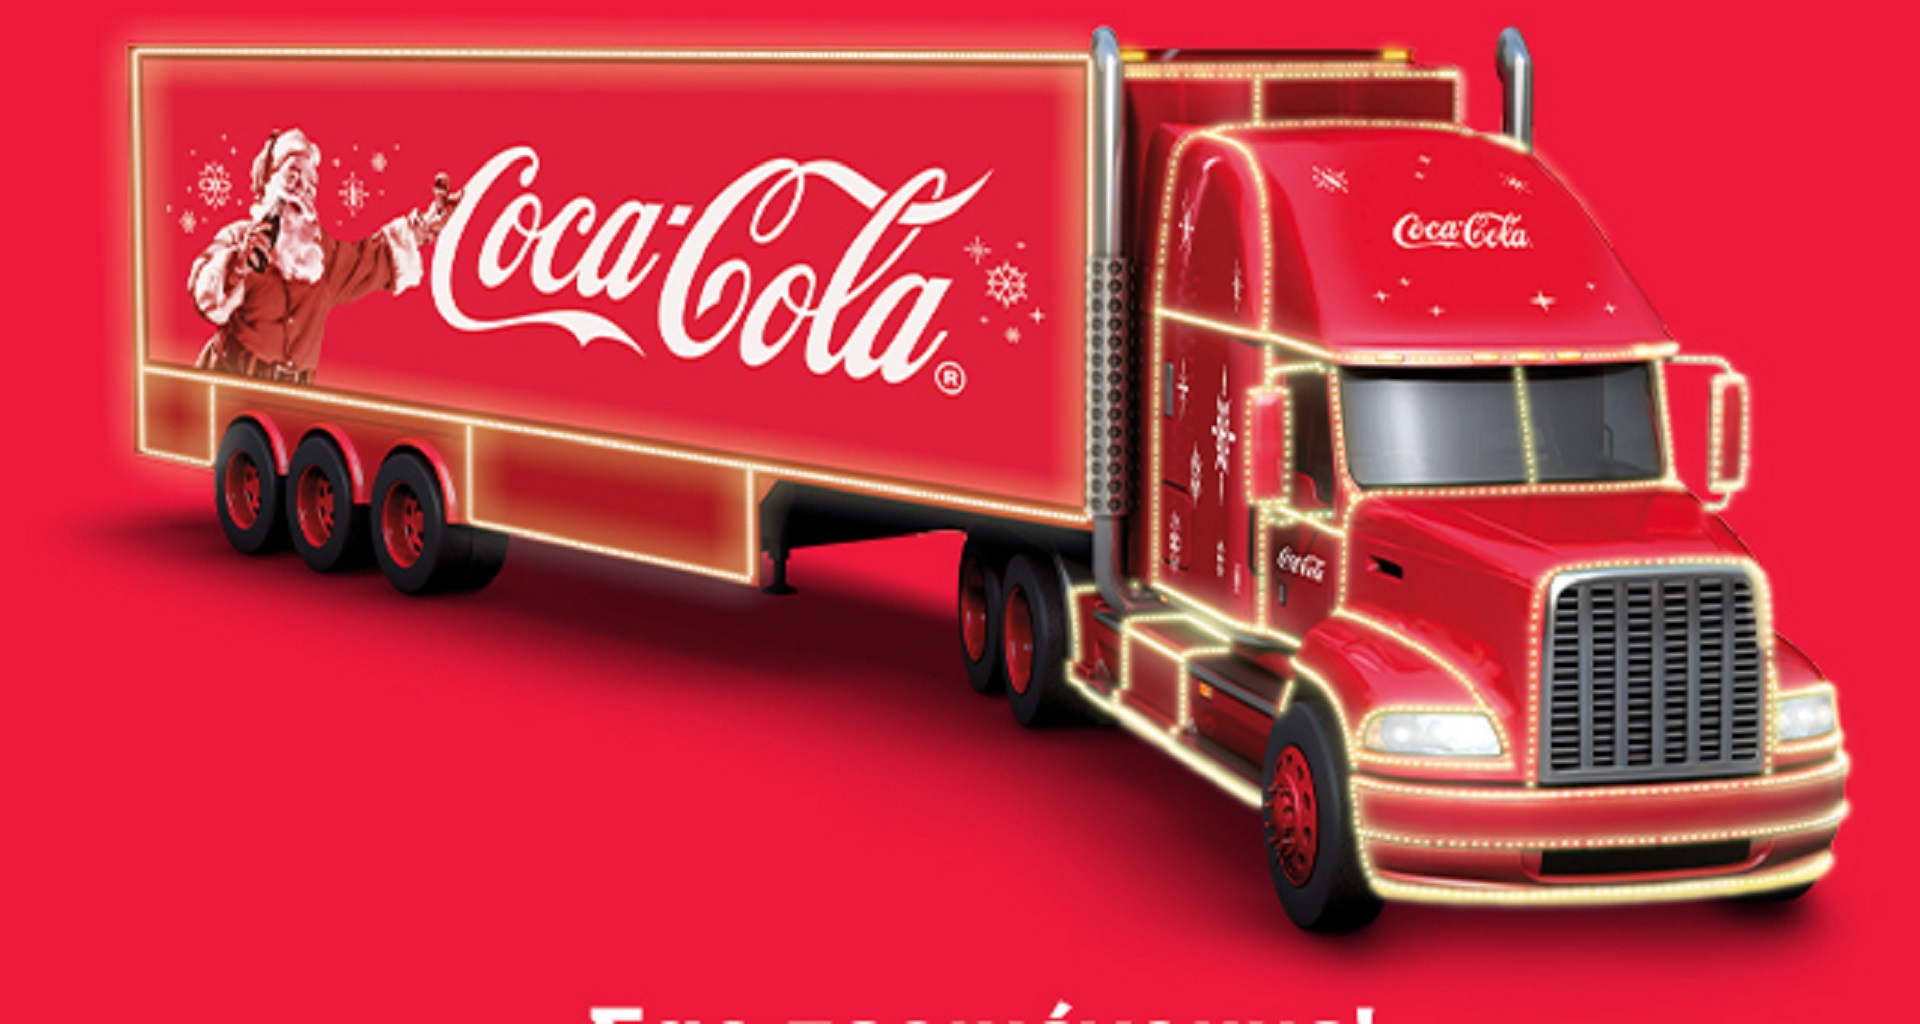 Η Κύπρος υποδέχεται το Χριστουγεννιάτικο φορτηγό της Coca-Cola – Δείτε την ανακοίνωση της εταιρείας και το δρομολόγιο